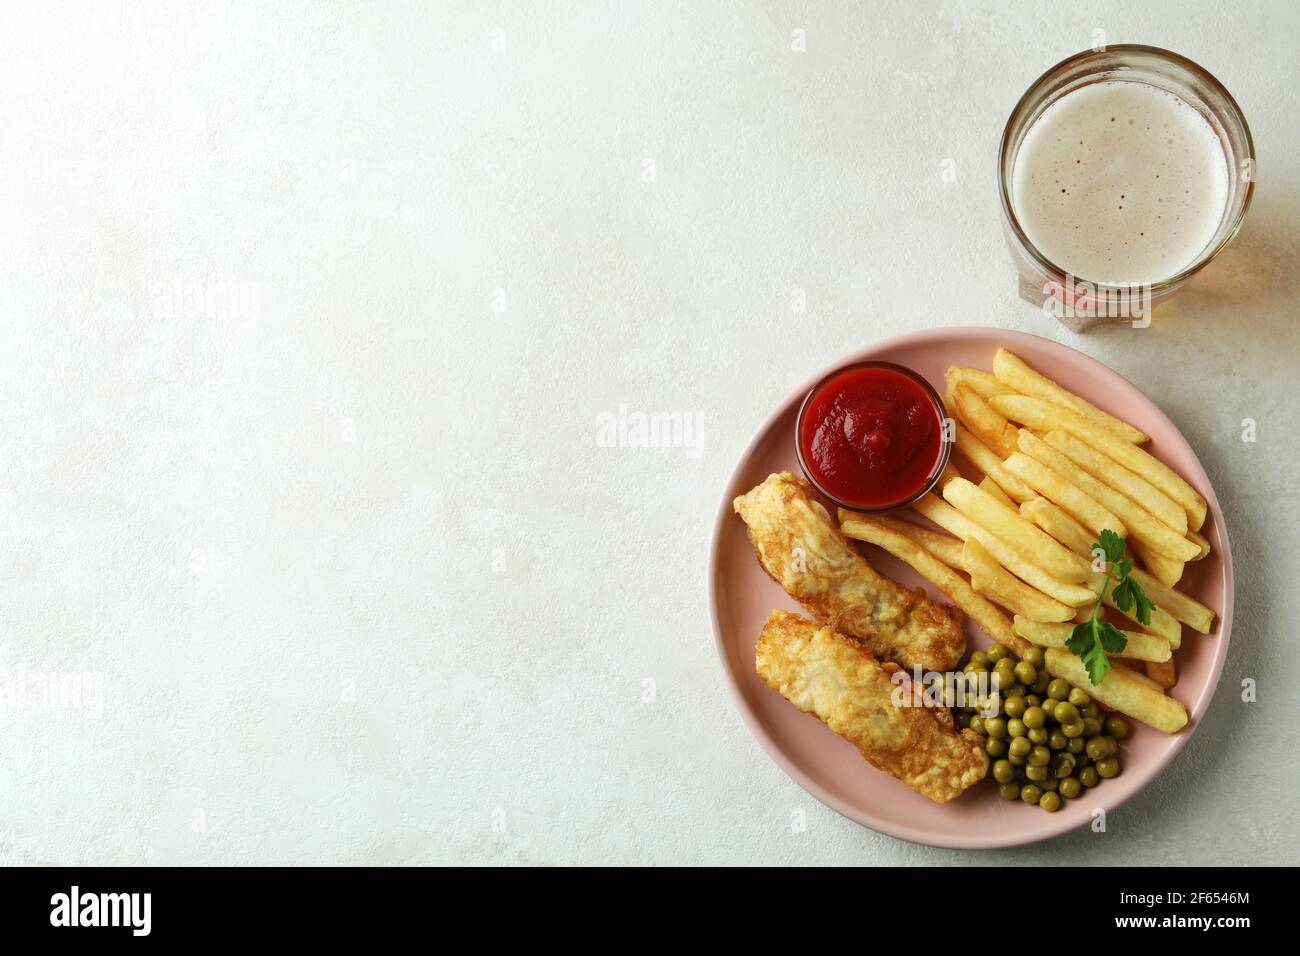 Piatto con pesce fritto e patatine e birra su tavola testurizzata bianca Foto Stock